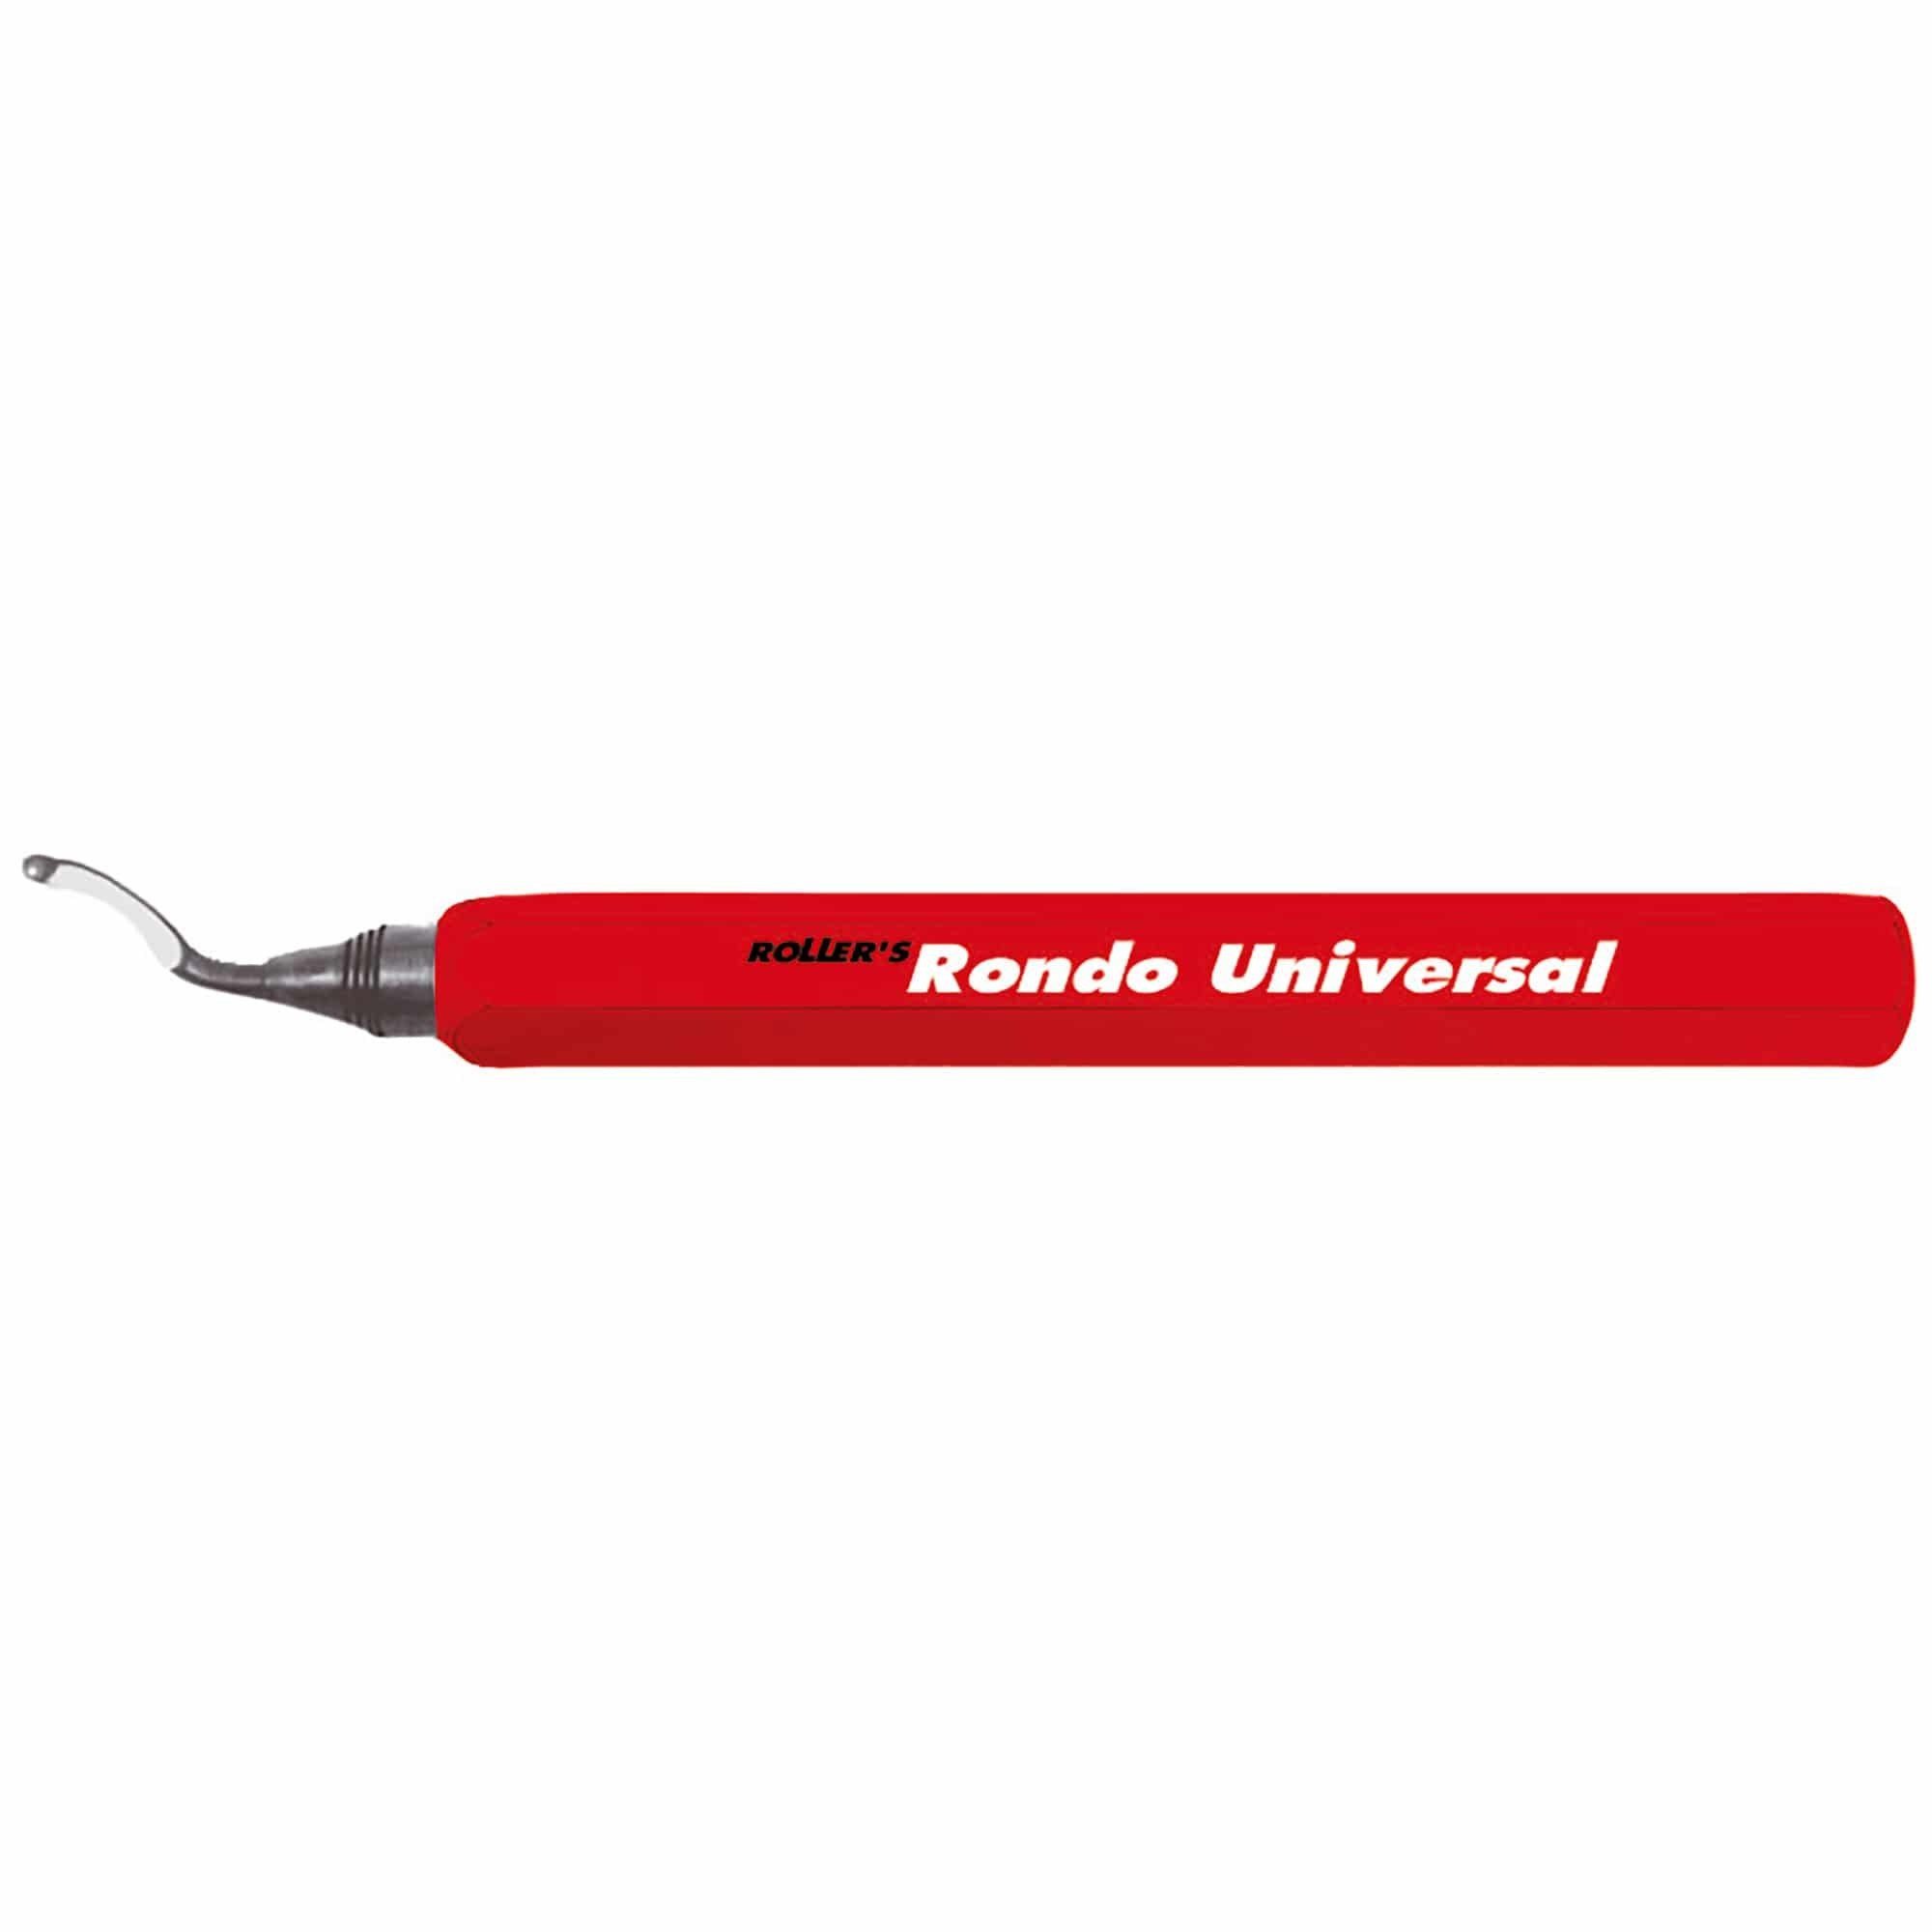 Rondo und - Maschinen Universal-Entgrater Werkzeuge ROLLER'S Universal Feile, Roller